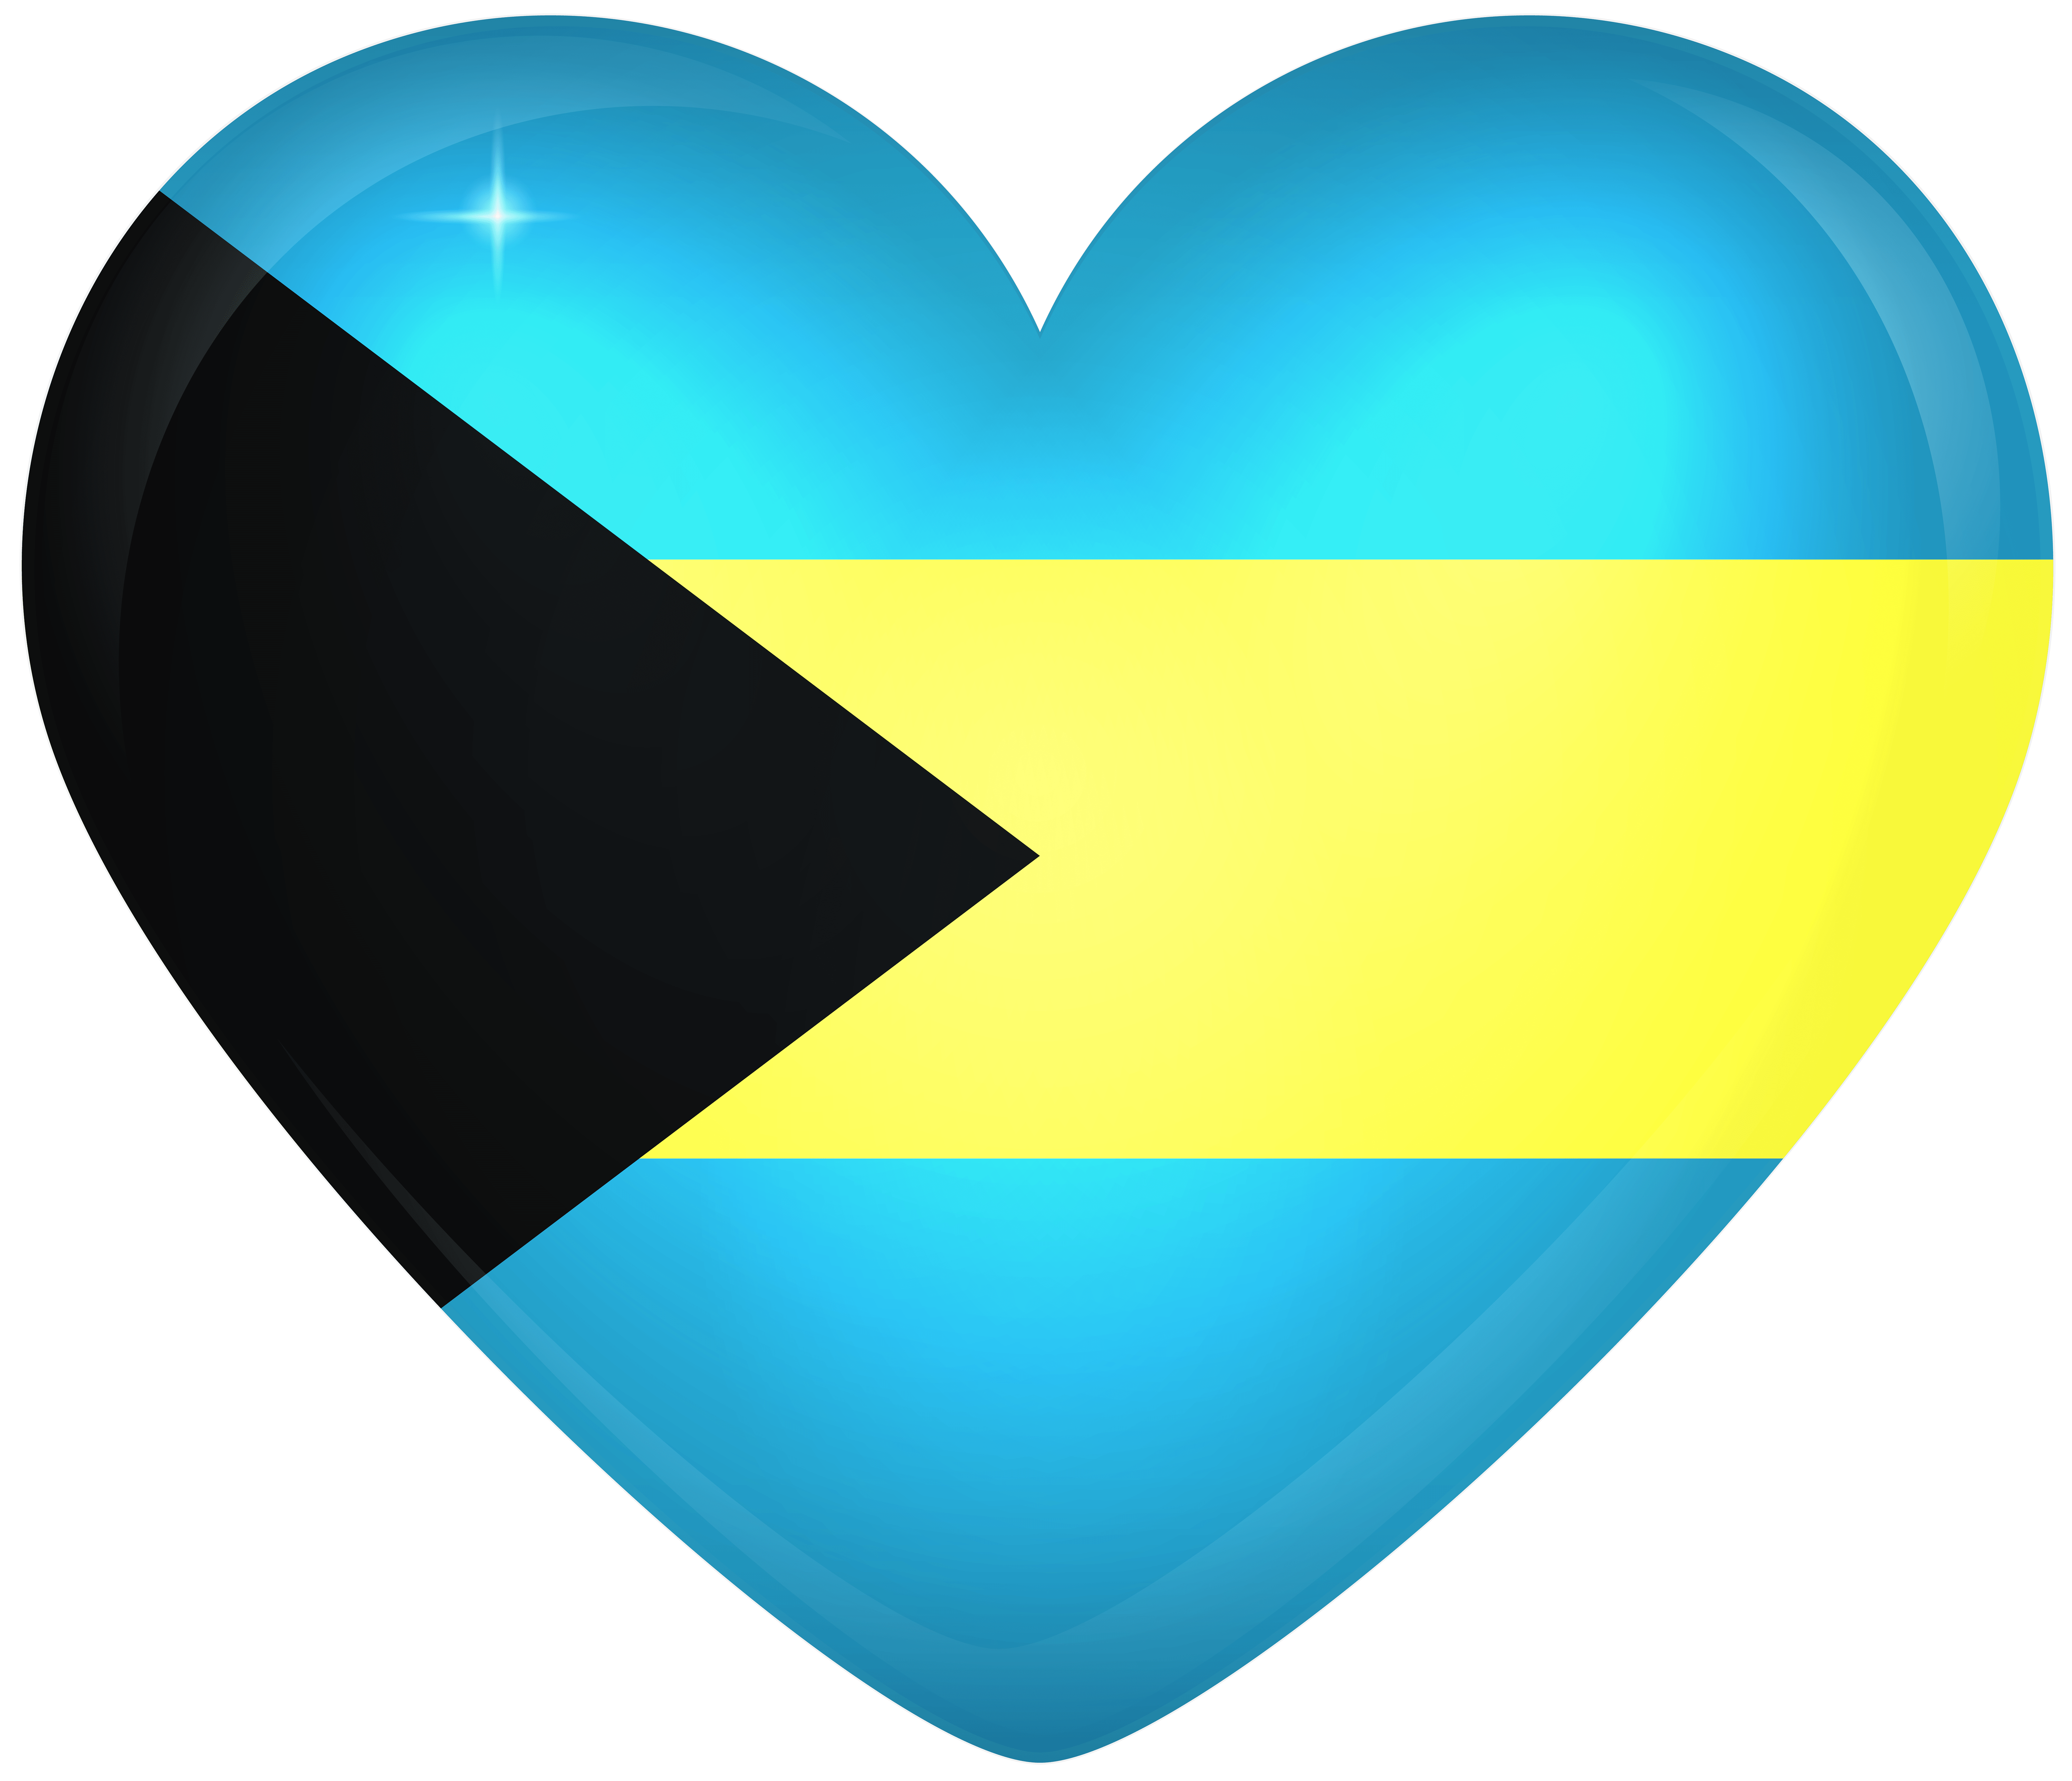 Bahamas Large Heart Flag Quality